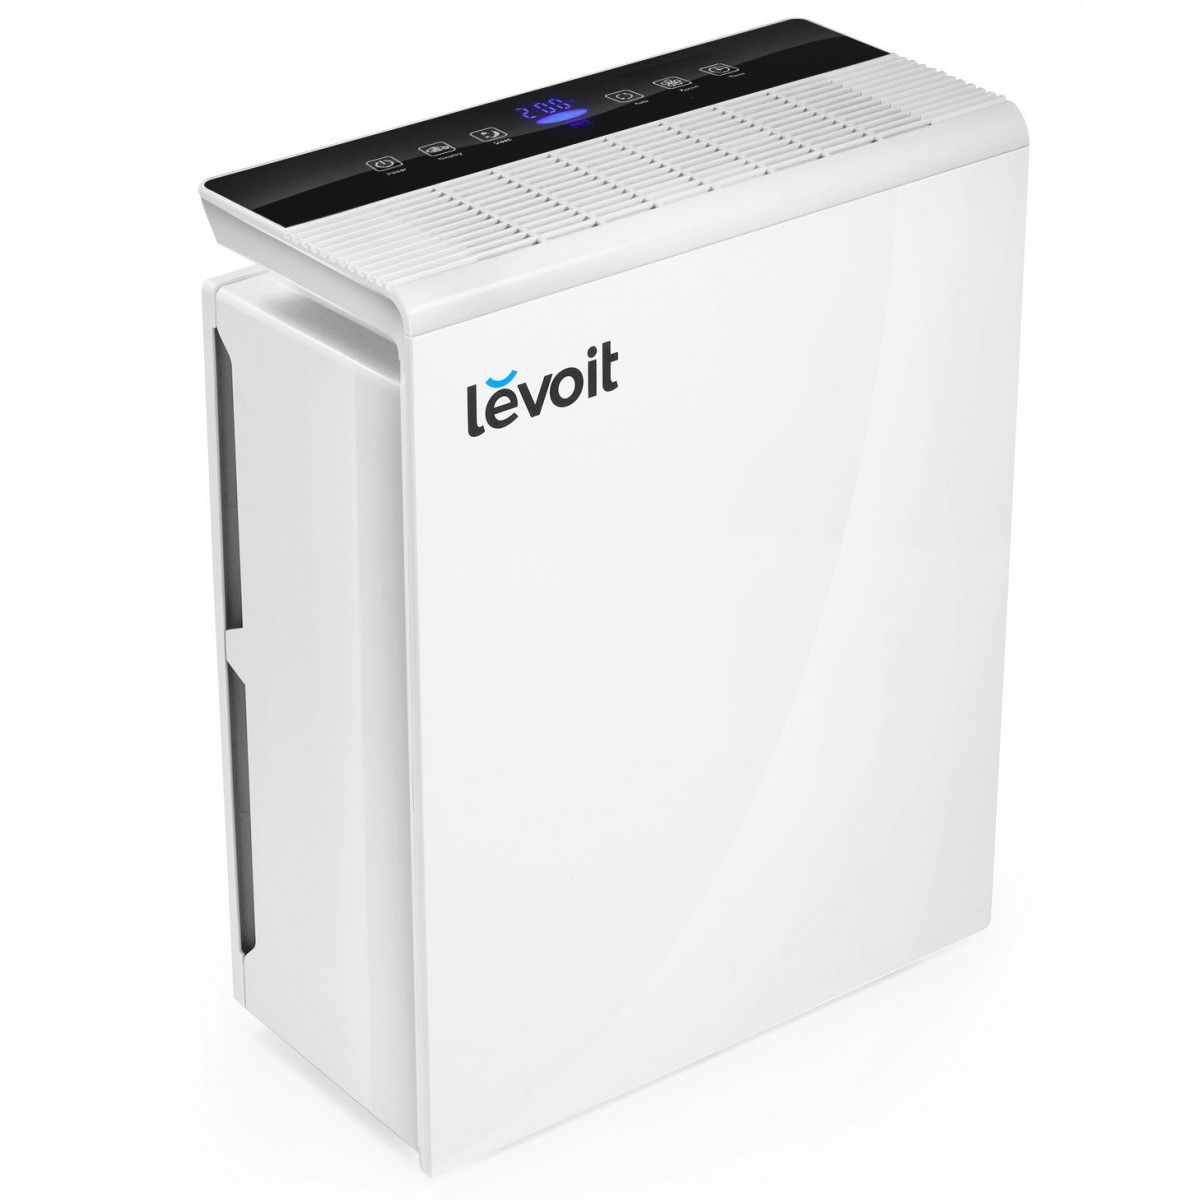 levoit lv-pur131 air purifier review